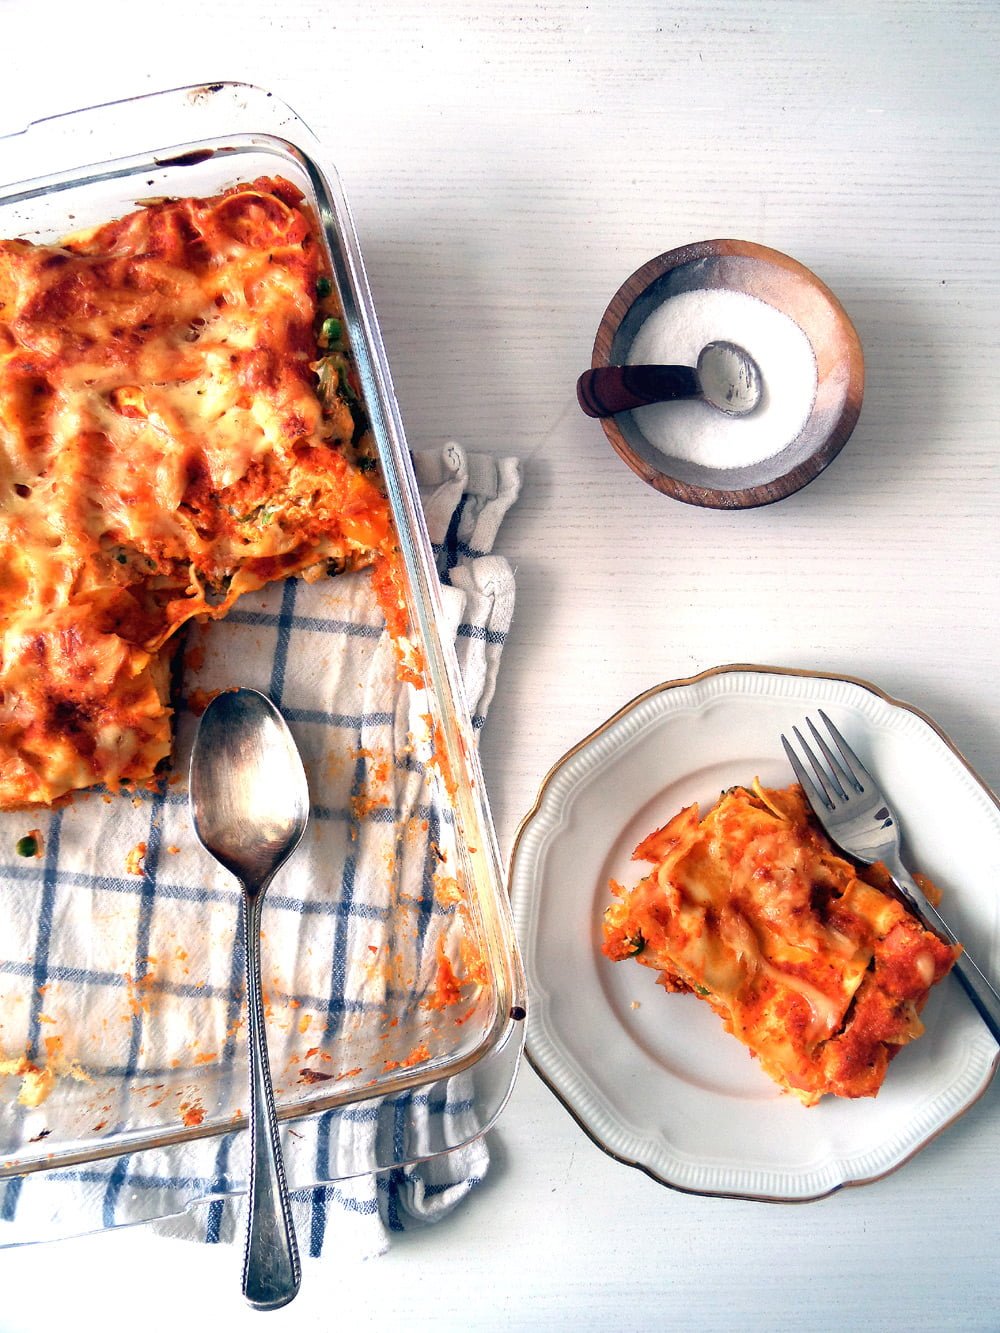 ricotta lasagna roasted vegetables